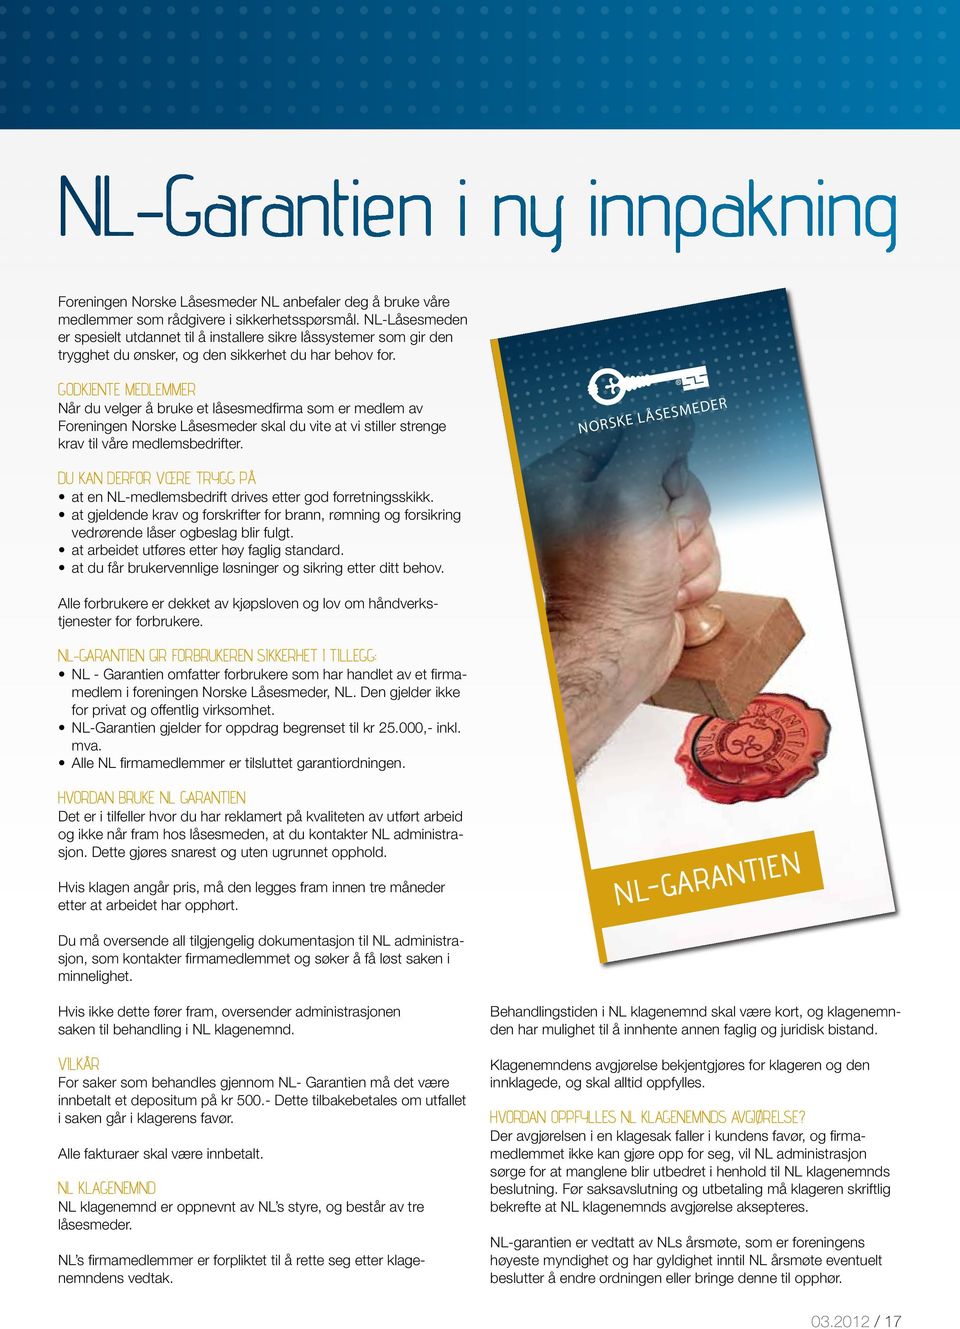 Foreningen Norske Låsesmeder NL anbefaler deg å bruke våre medlemmer som rådgivere i sikkerhetsspørsmål.